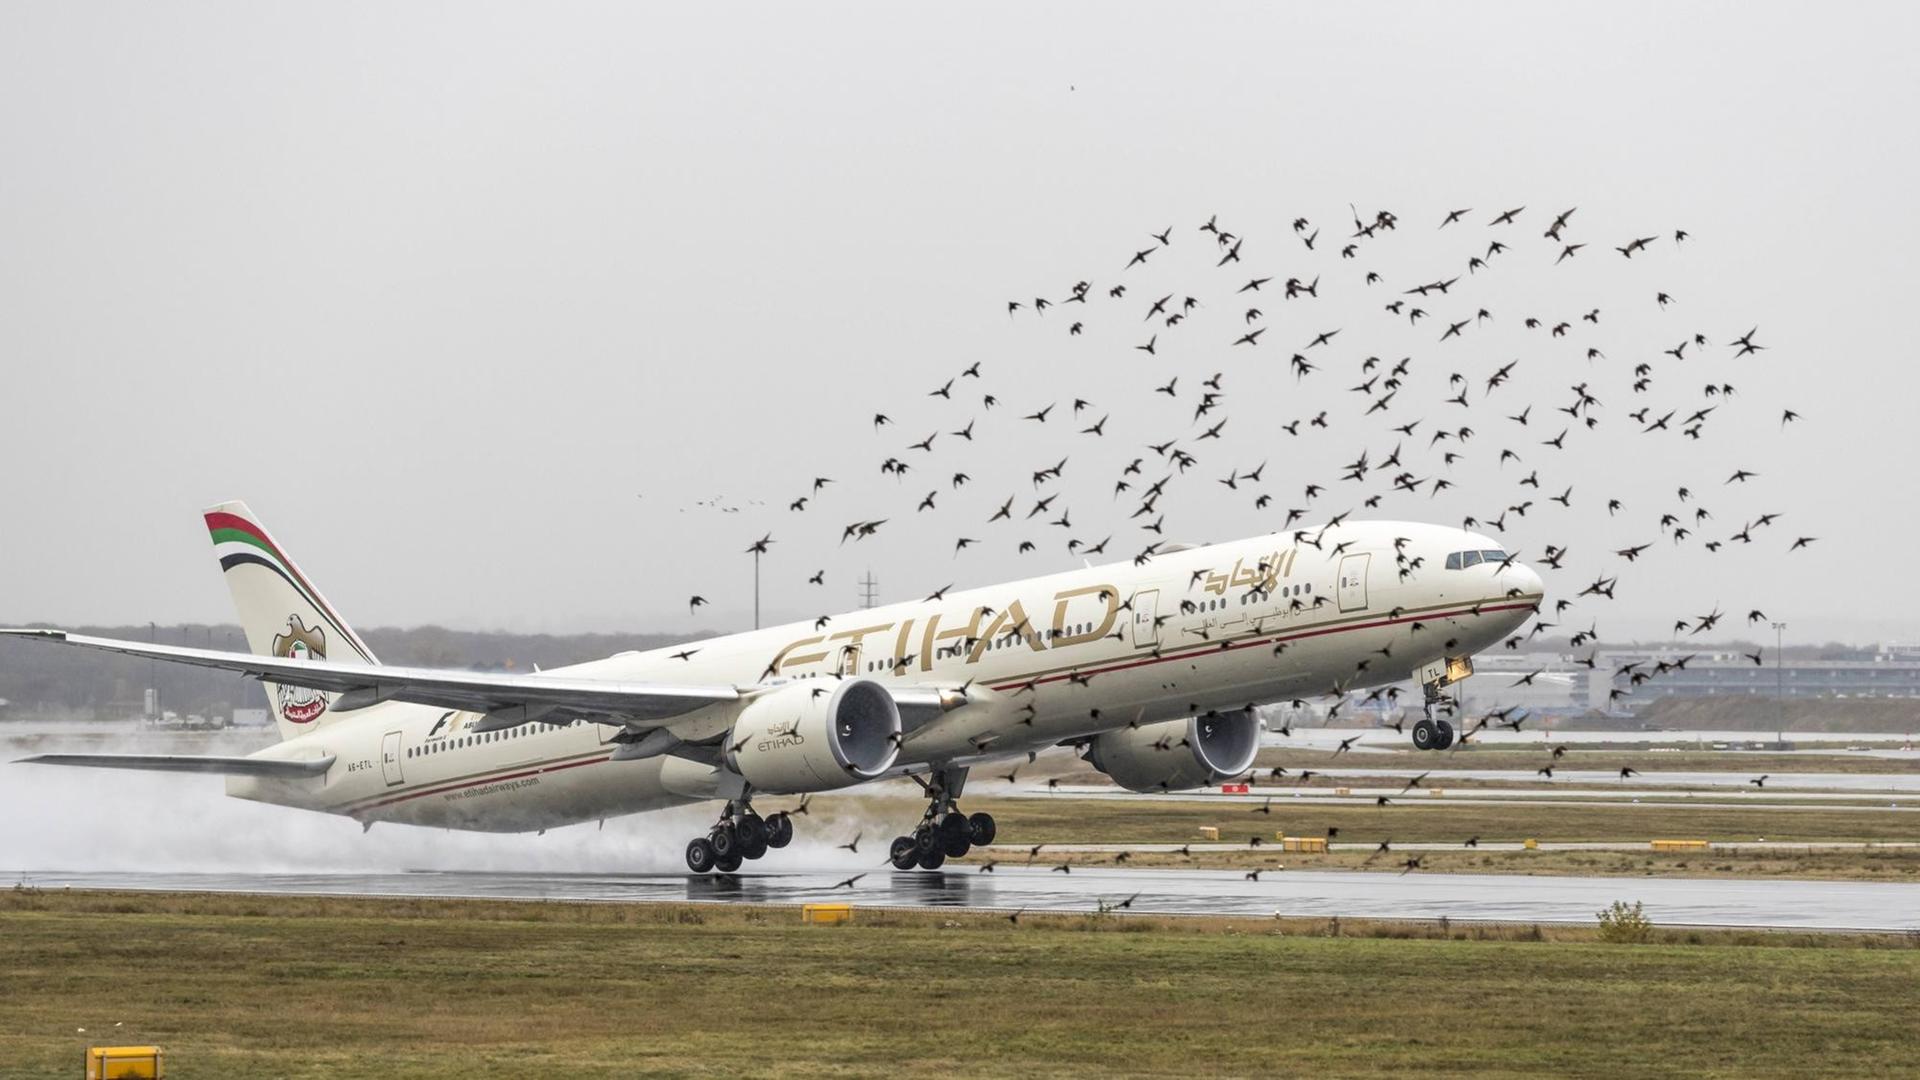 Ein Flugzeug der Gesellschaft Etihad hebt am Flughafen Frankfurt ab und trifft auf einen Vogelschwarm